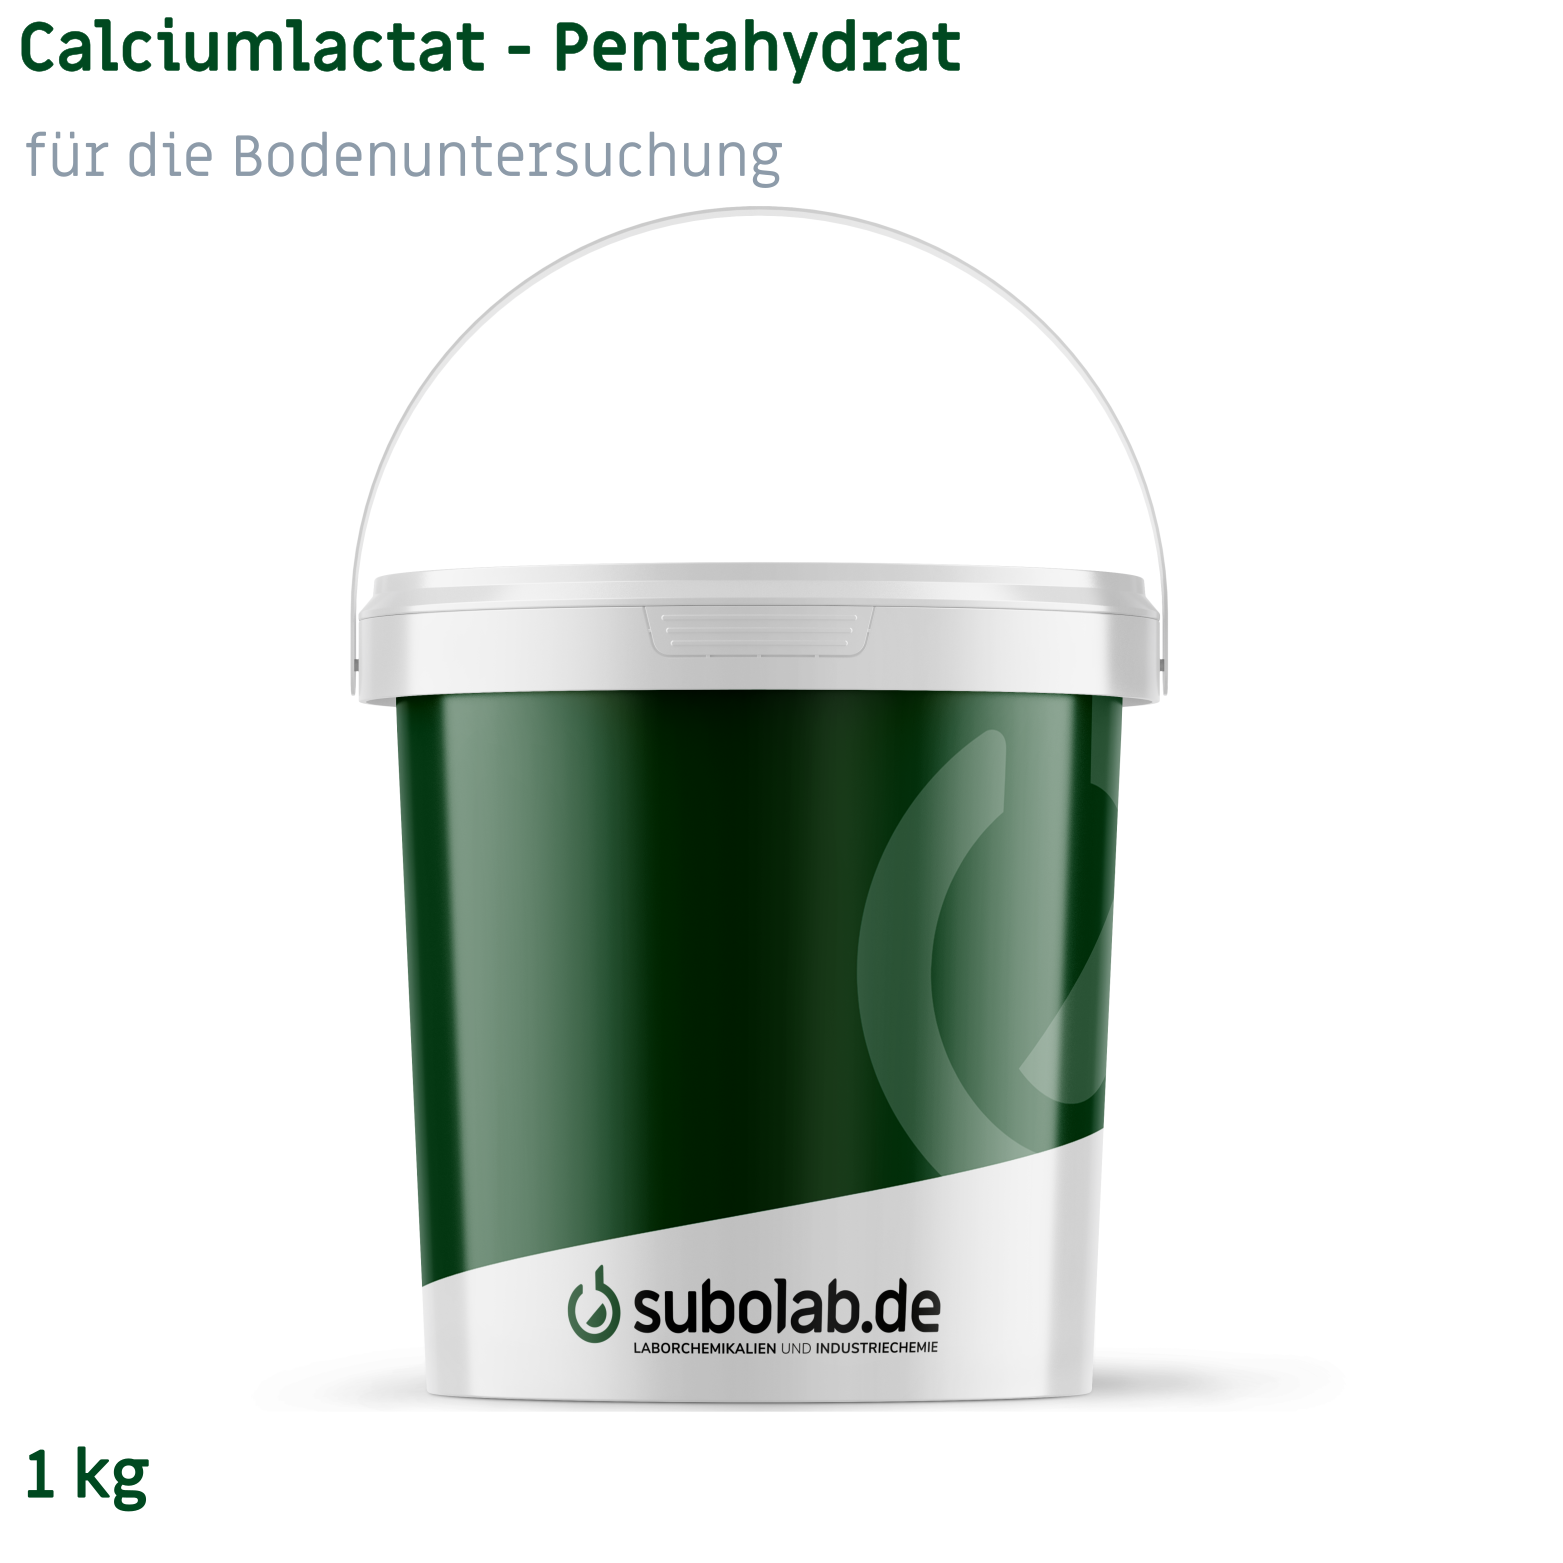 Bild von Calciumlactat - Pentahydrat für die Bodenuntersuchung (1 kg)